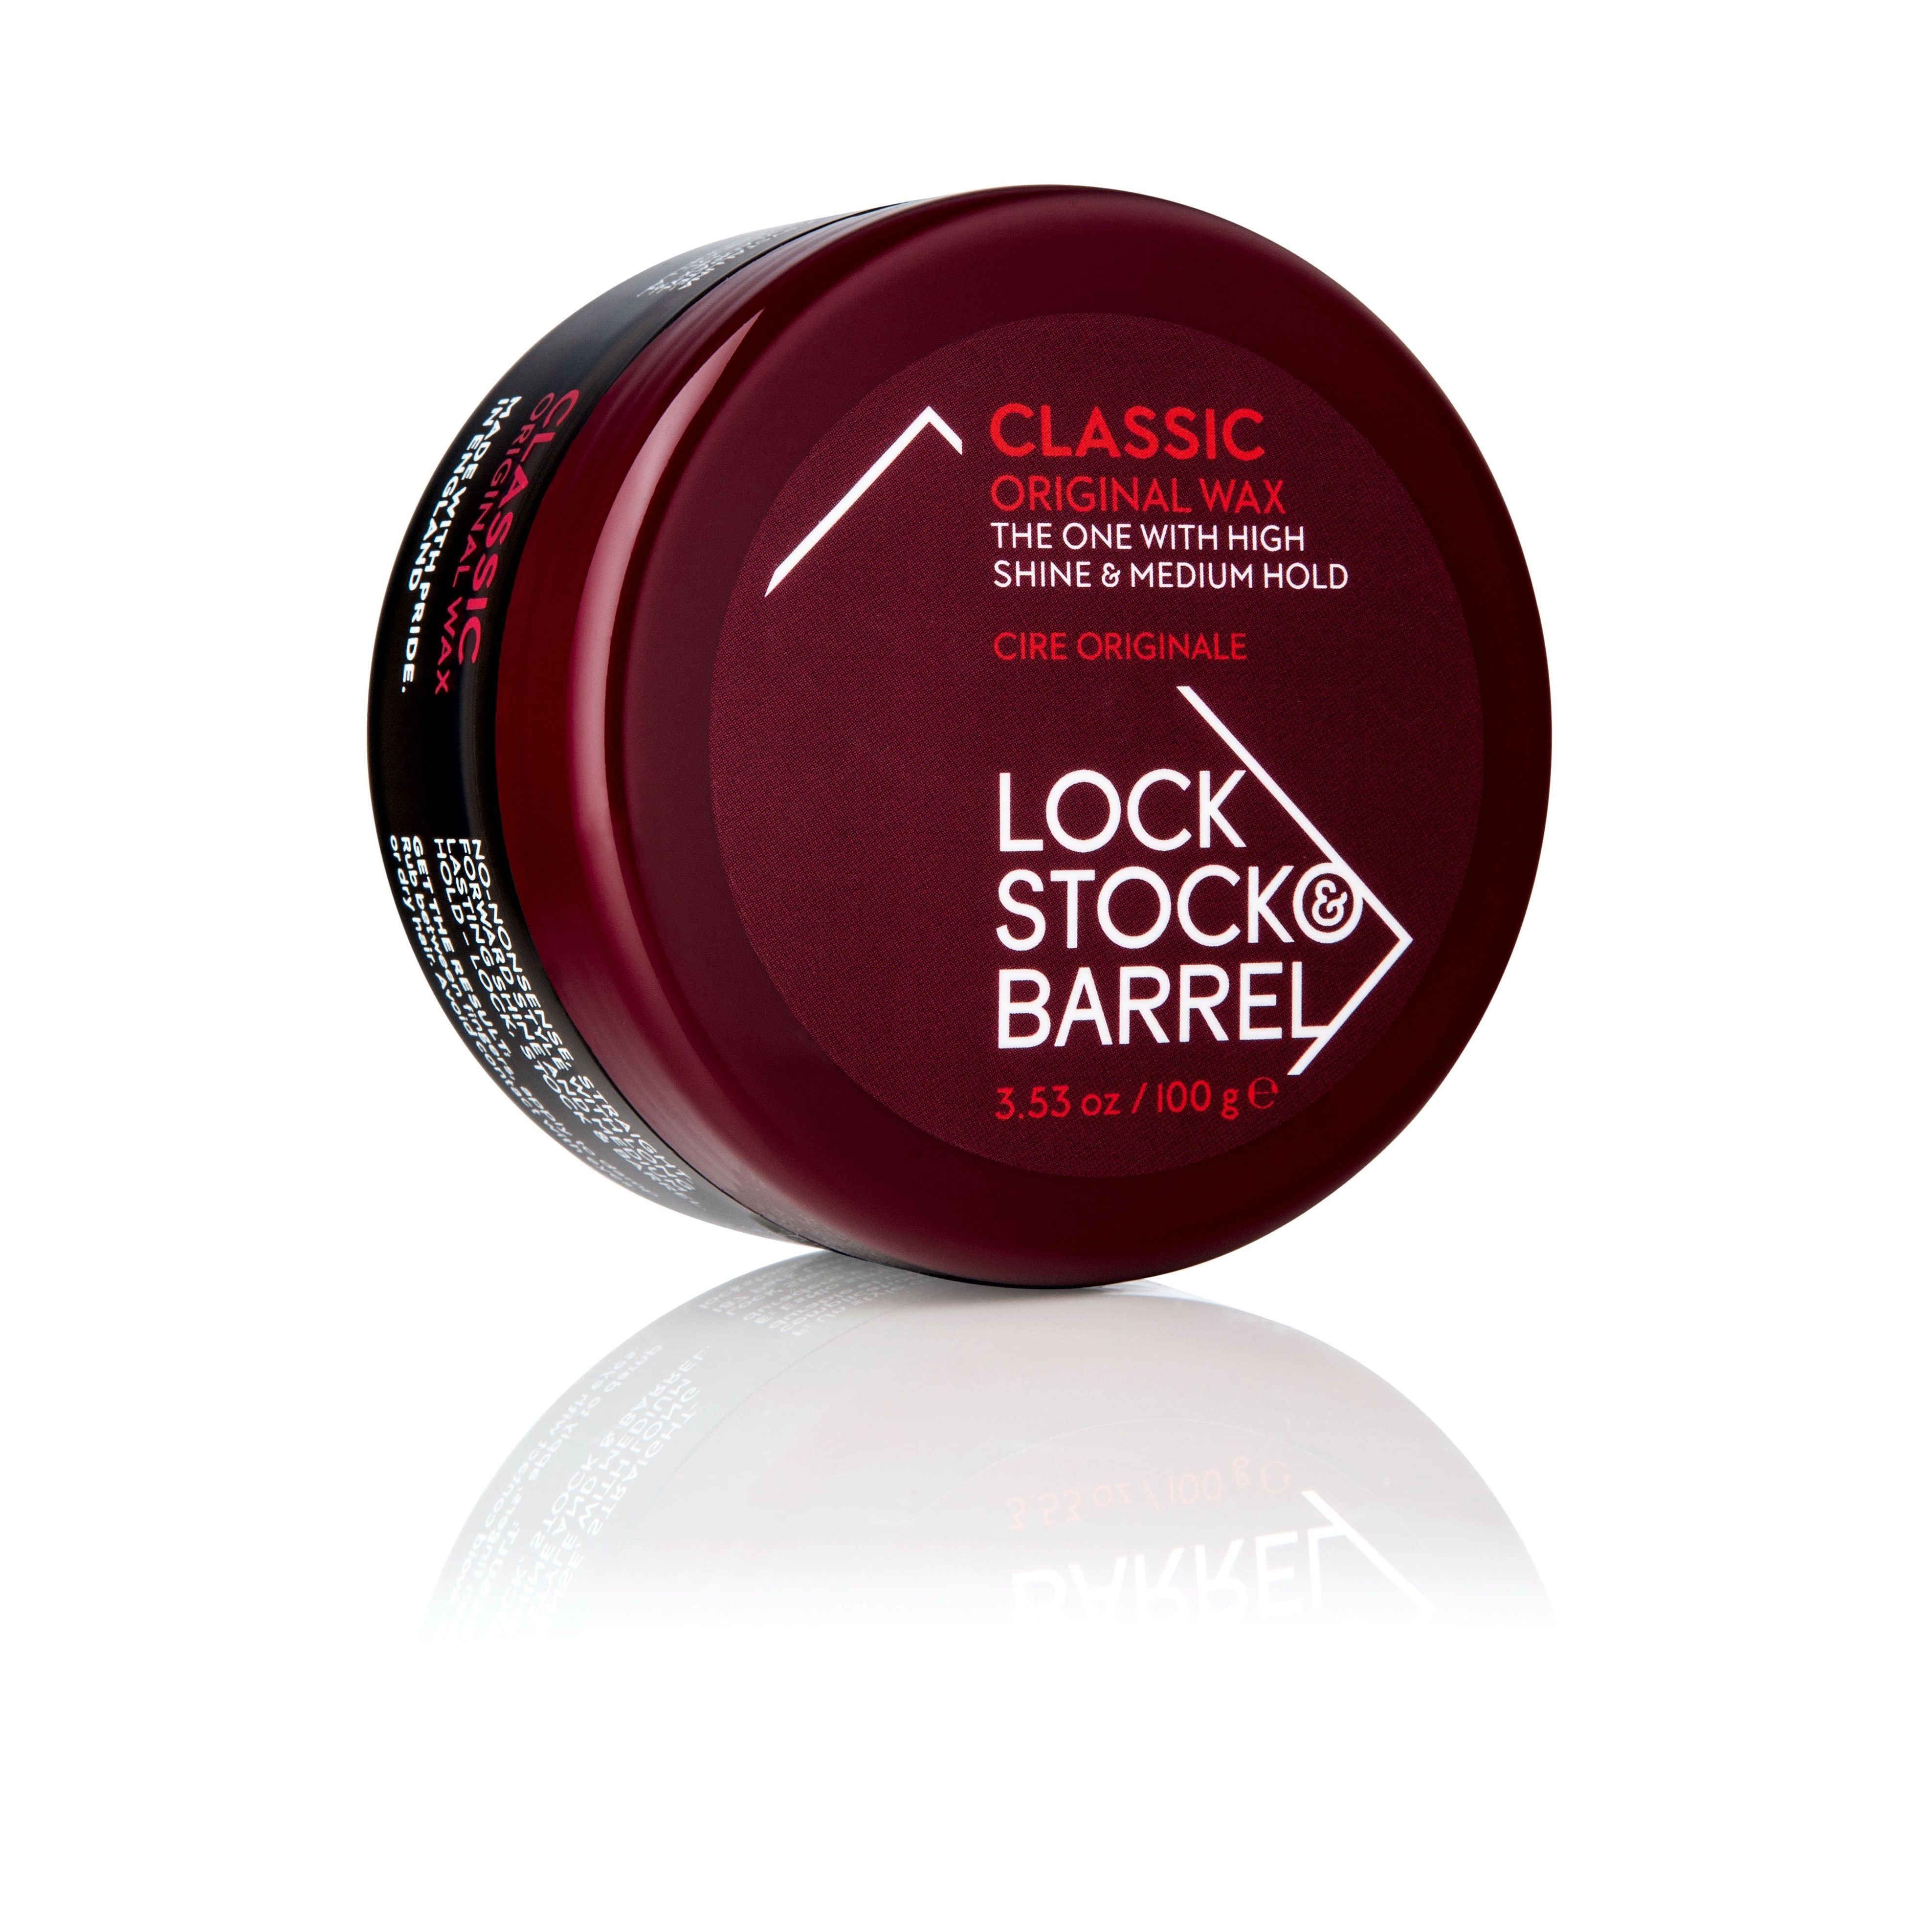 Воск для укладки волос Lock Stock & Barrel Original Classic Wax мужской 100 мл 100% new original 1pcs cxd9788arspot stock